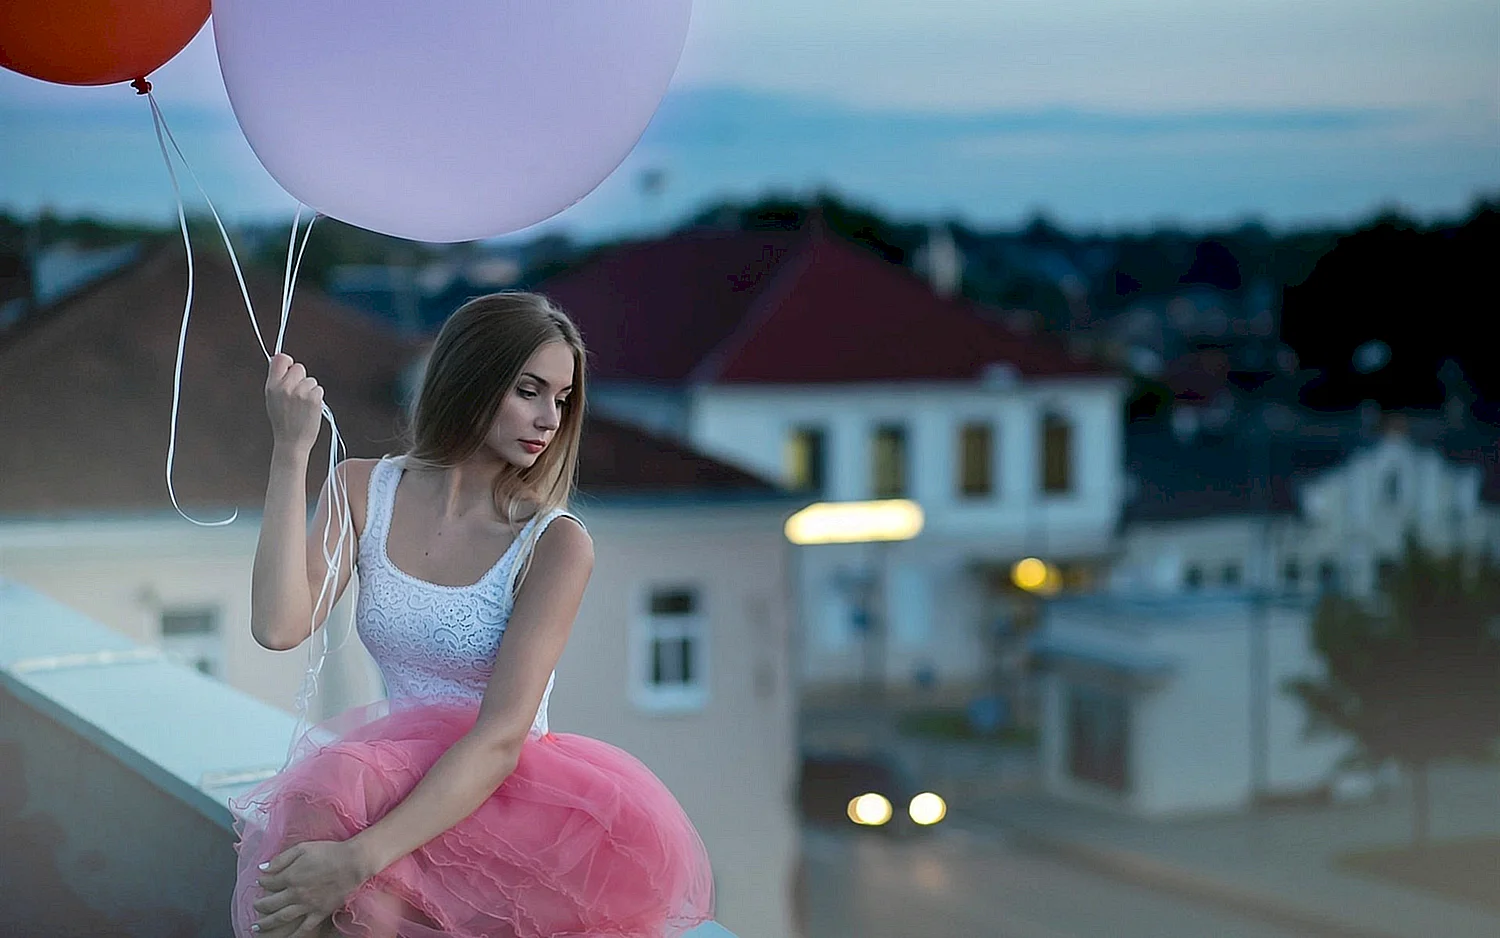 Девушка с воздушными шарами